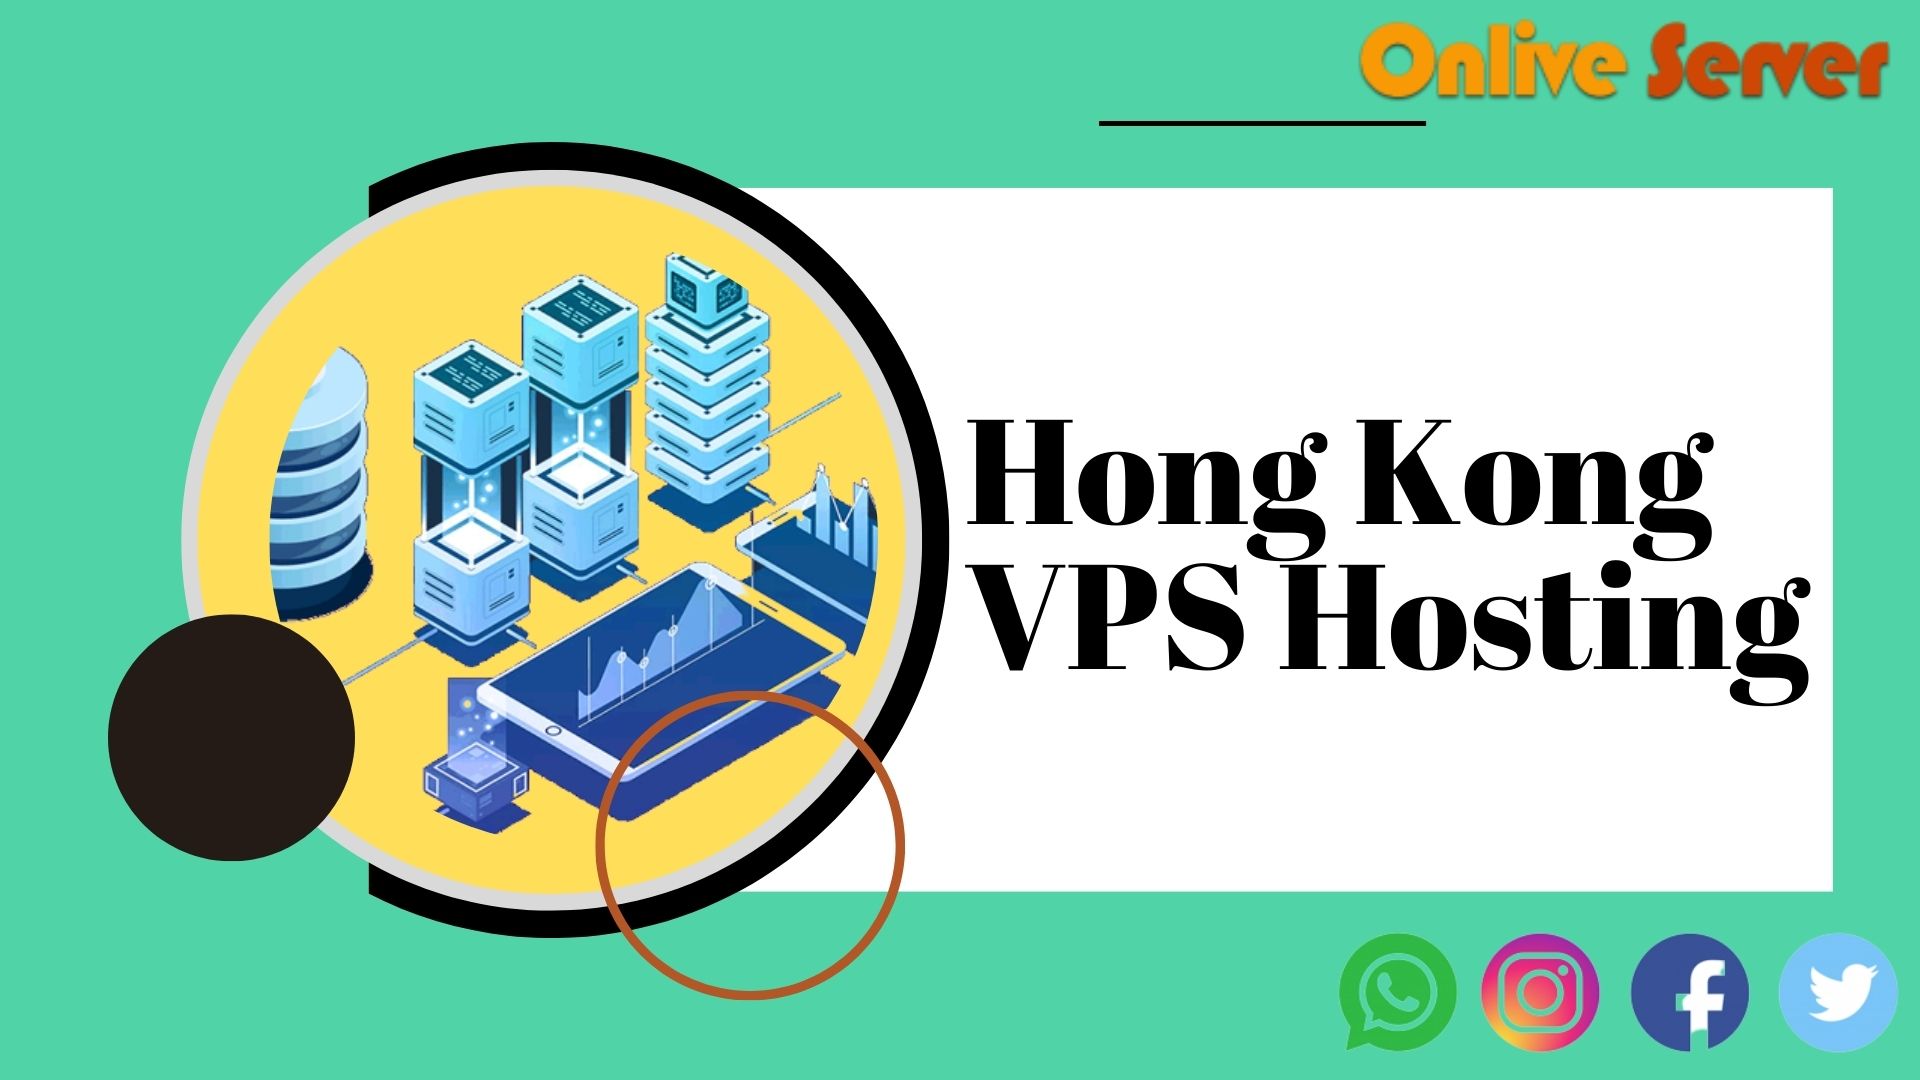 Hong Kong VPS Hosting